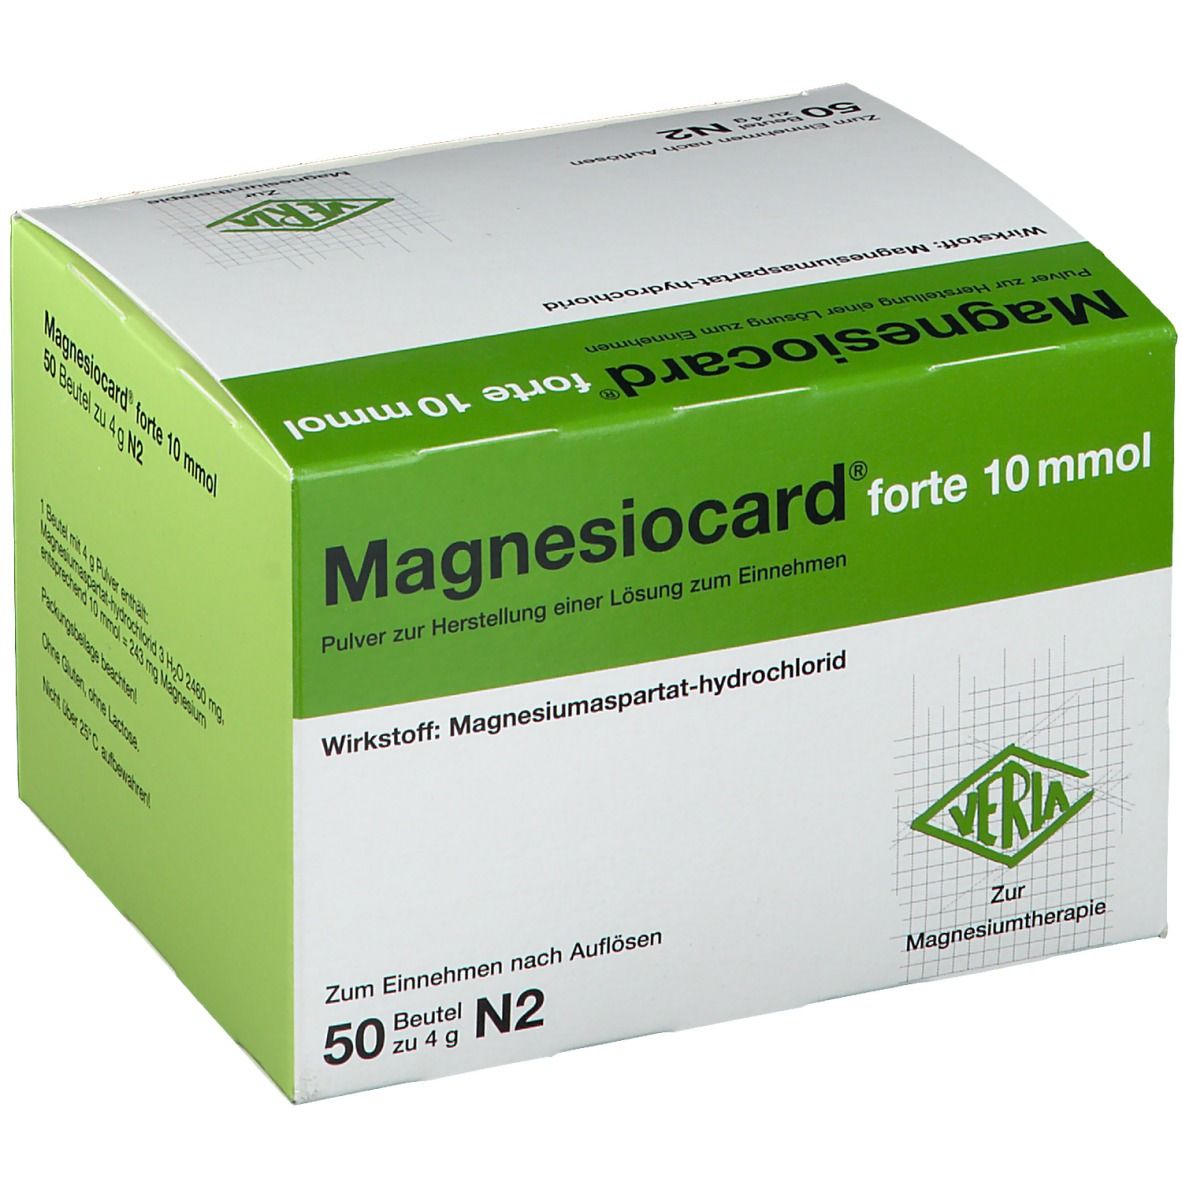 Magnesiocard® forte 10mmol Pulver